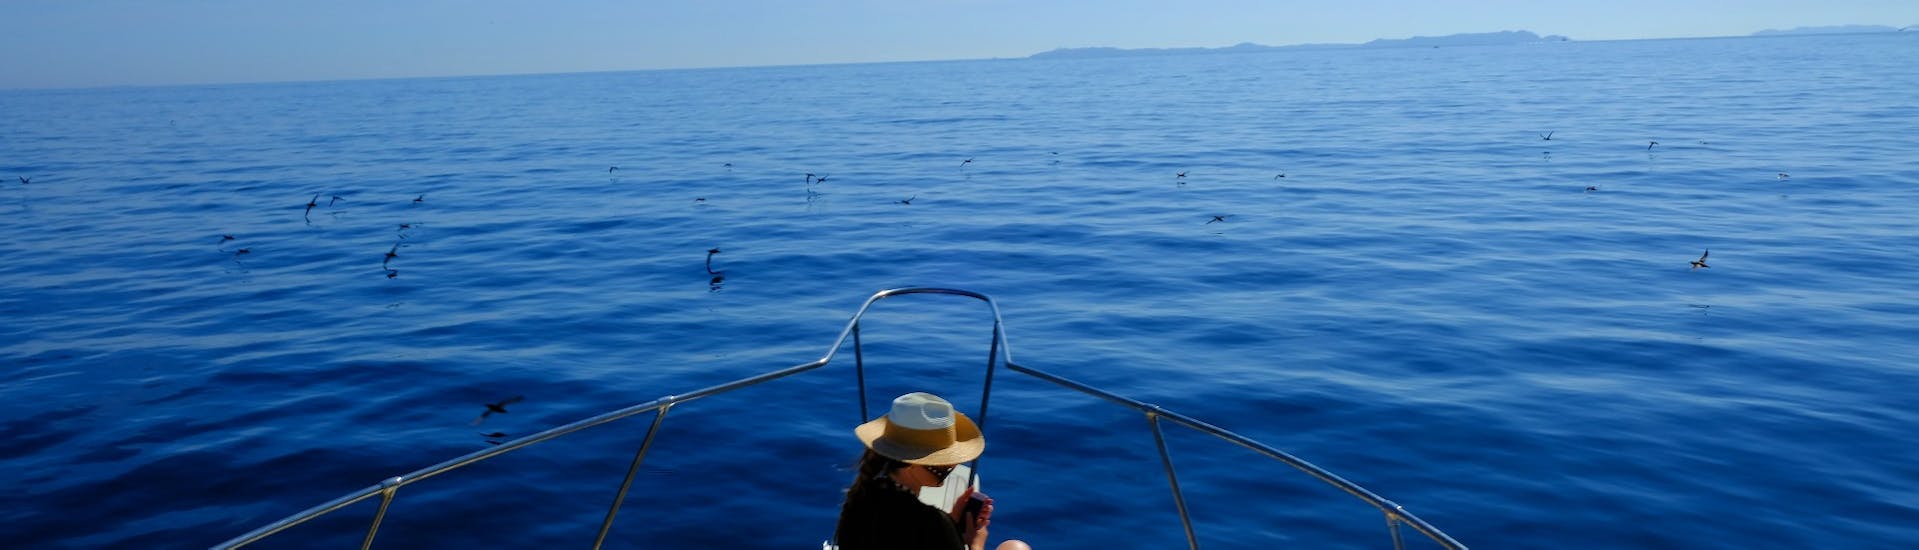 Gita in barca privata all'arcipelago di La Maddalena.